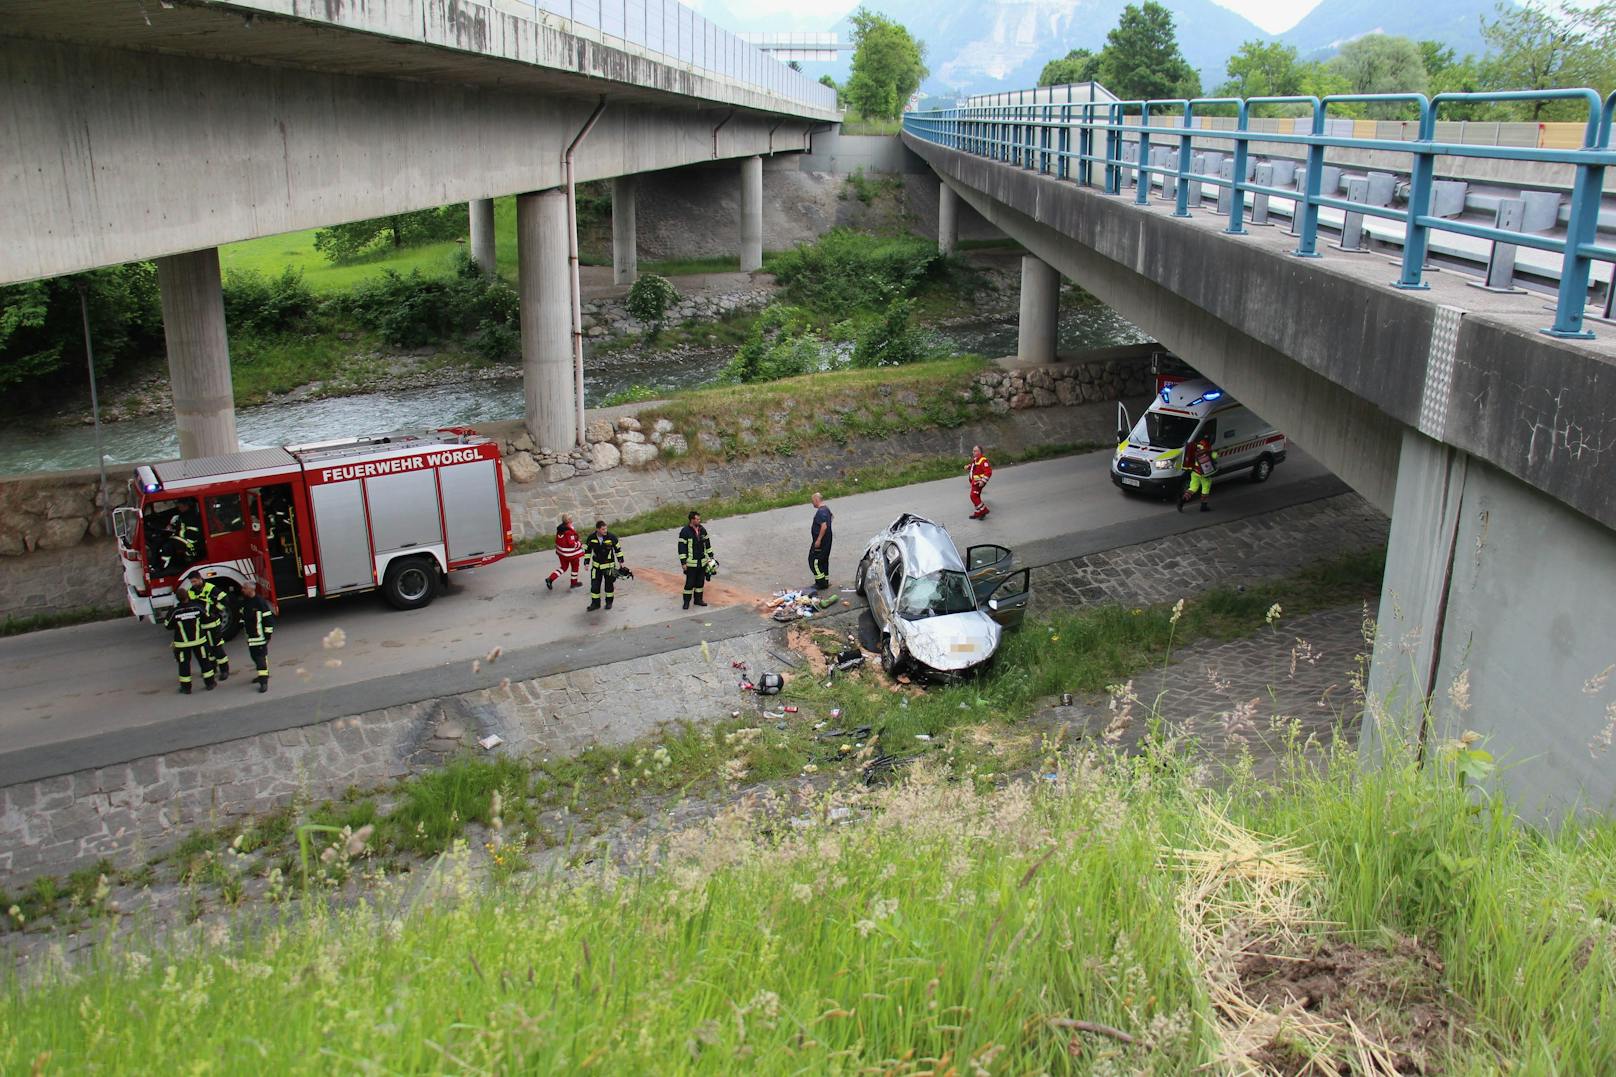 Nach erfolgter Erstversorgung an der Unfallstelle mussten die Verletzten von den Rettungskräften ins Krankenhaus nach Kufstein gebracht werden. Am Auto entstand Totalschaden.